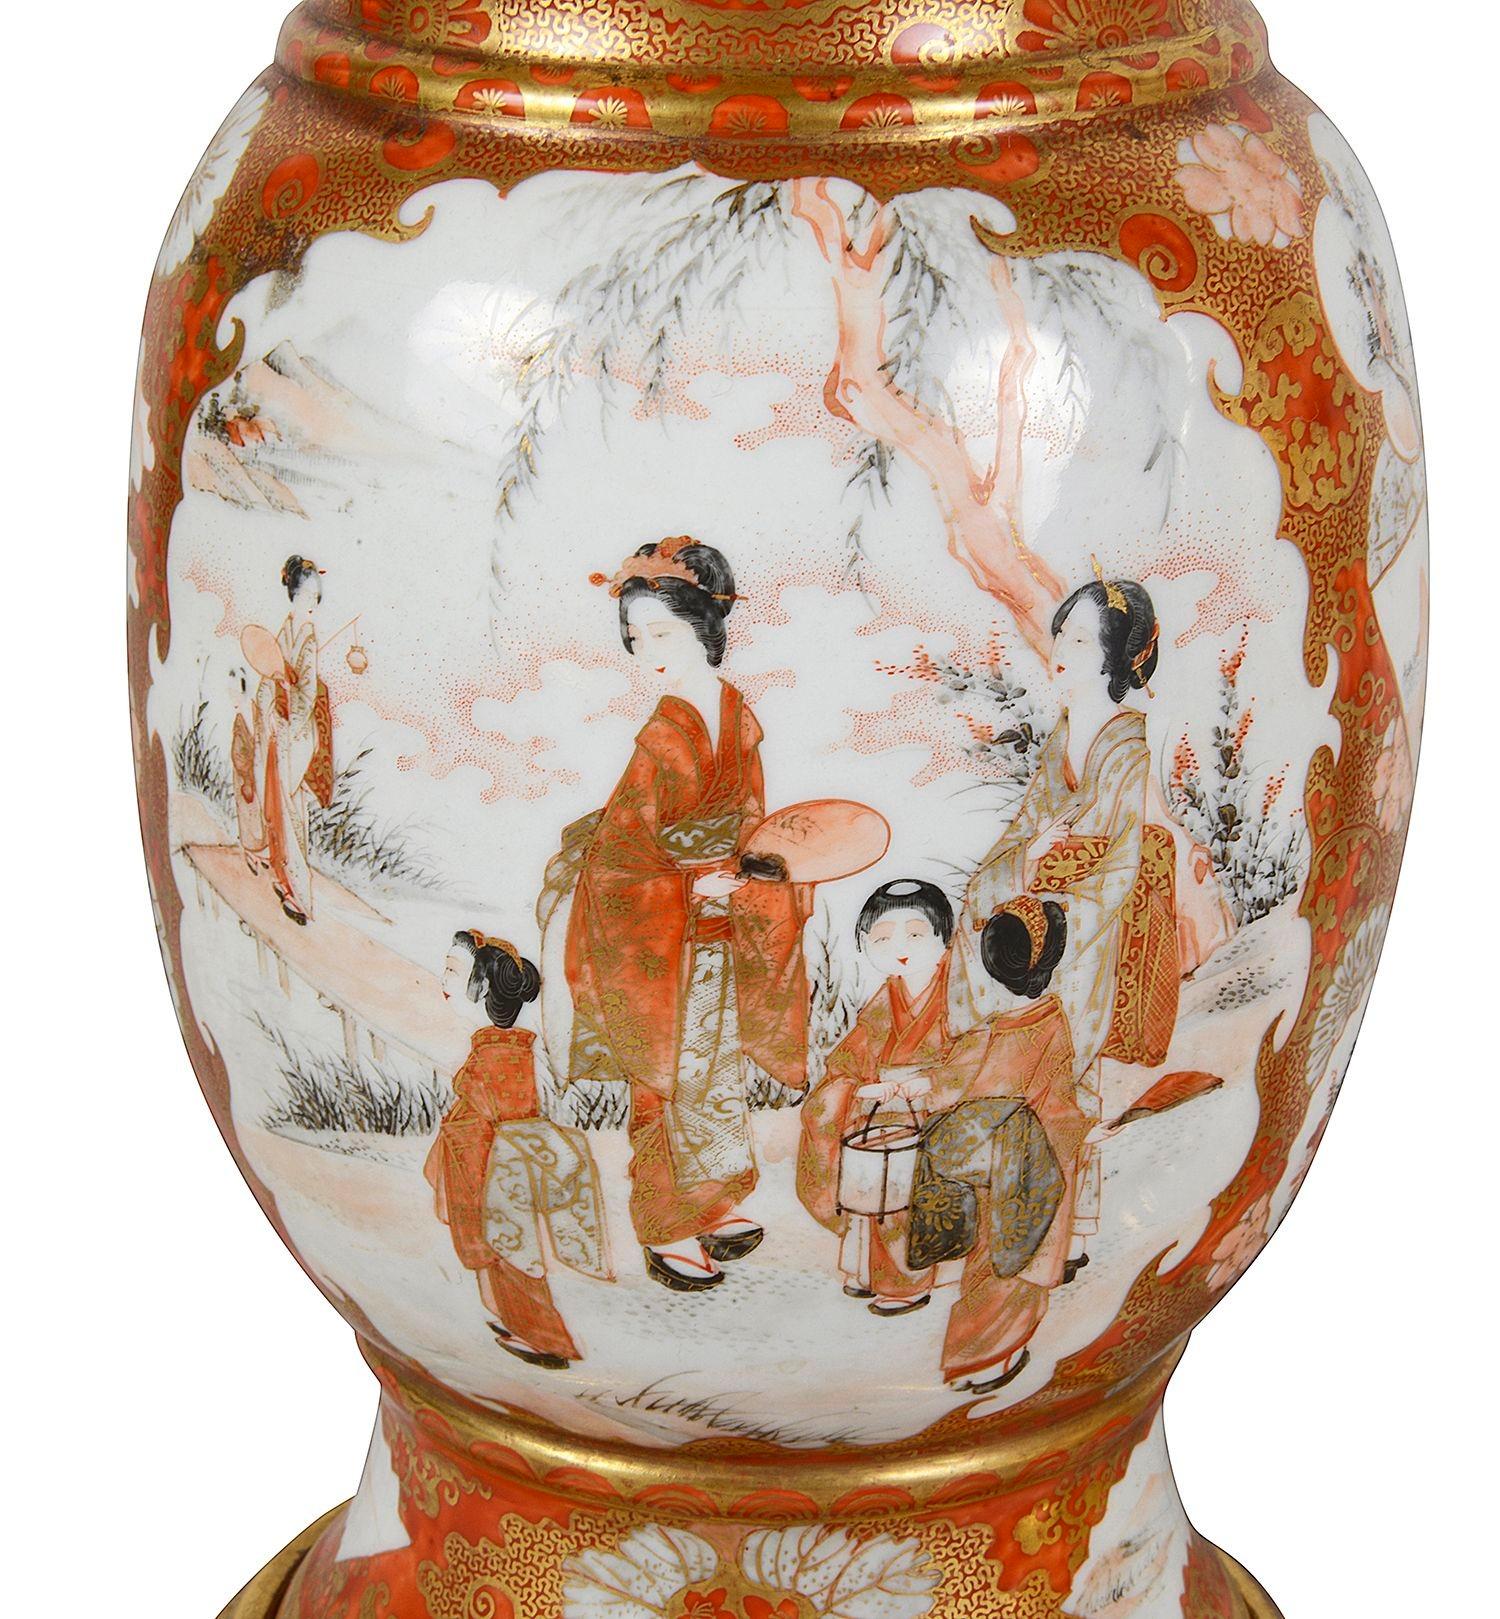 Paire de lampes en porcelaine japonaise Kutani de la fin du XIXe siècle. Chacune d'entre elles présente un fond orange classique avec une décoration dorée à enroulement classique. L'encastrement comporte des panneaux peints représentant des geishas